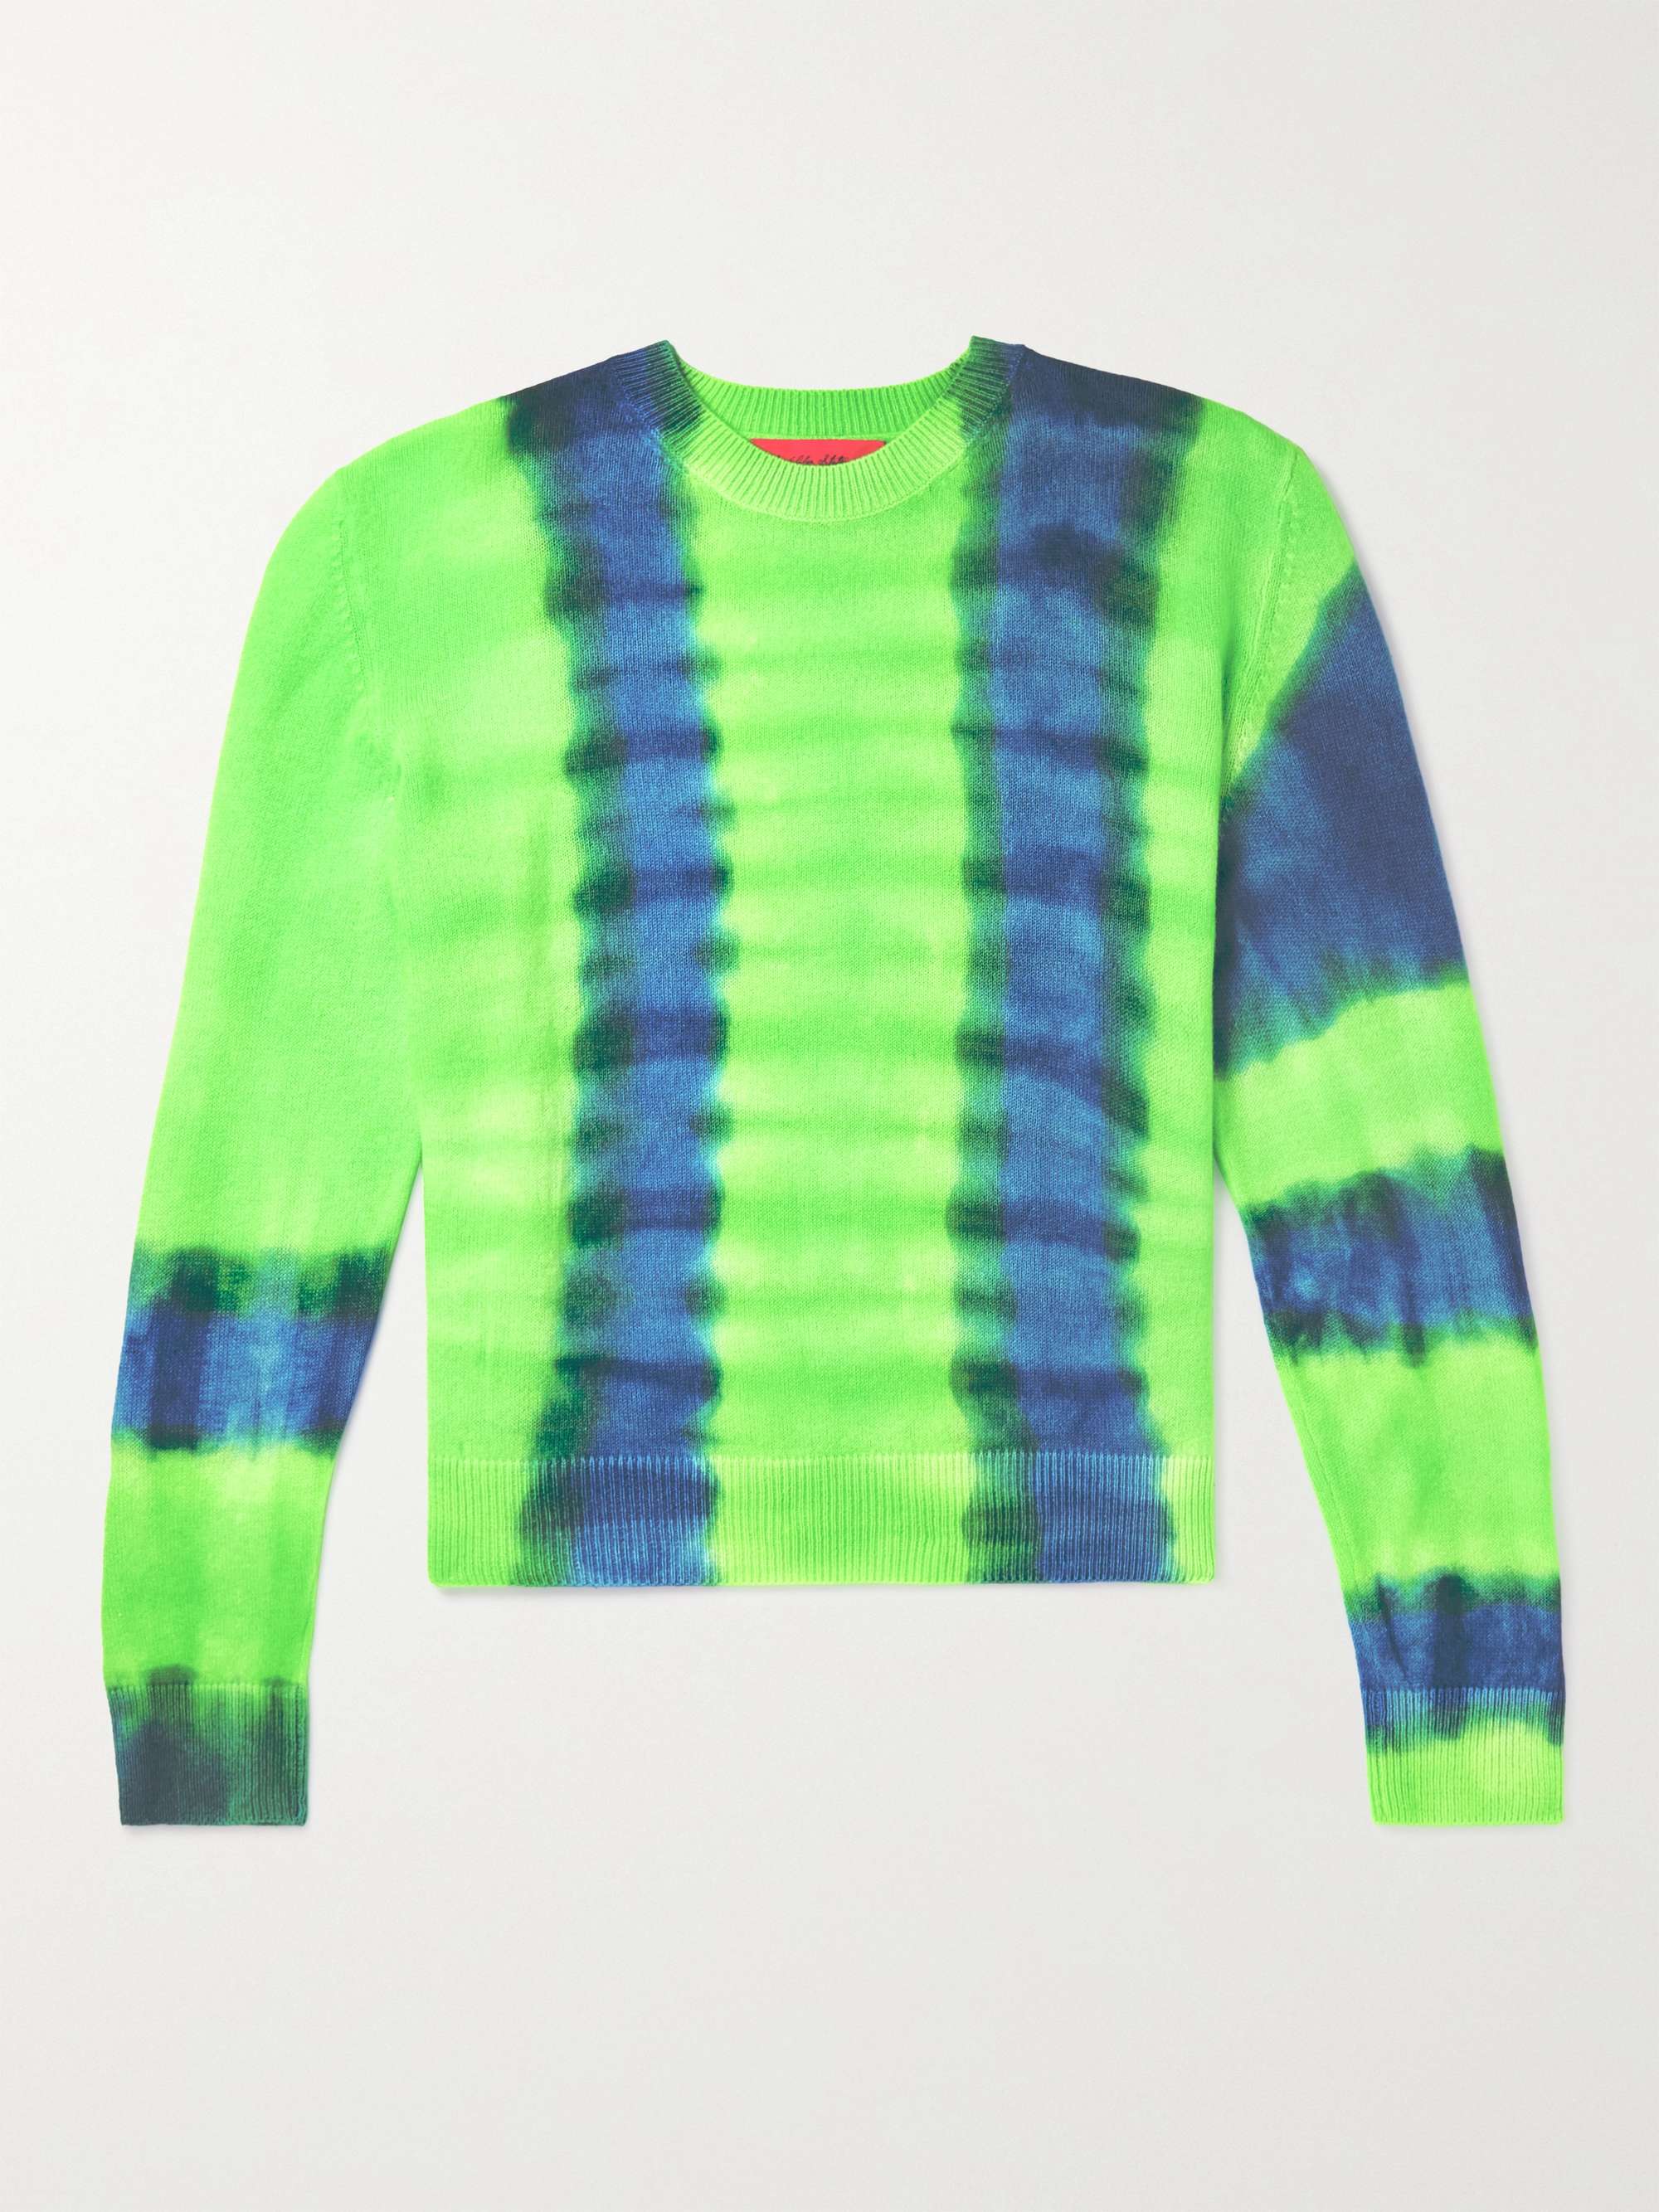 THE ELDER STATESMAN Hazen Tranquility Tie-Dyed Cashmere Sweater